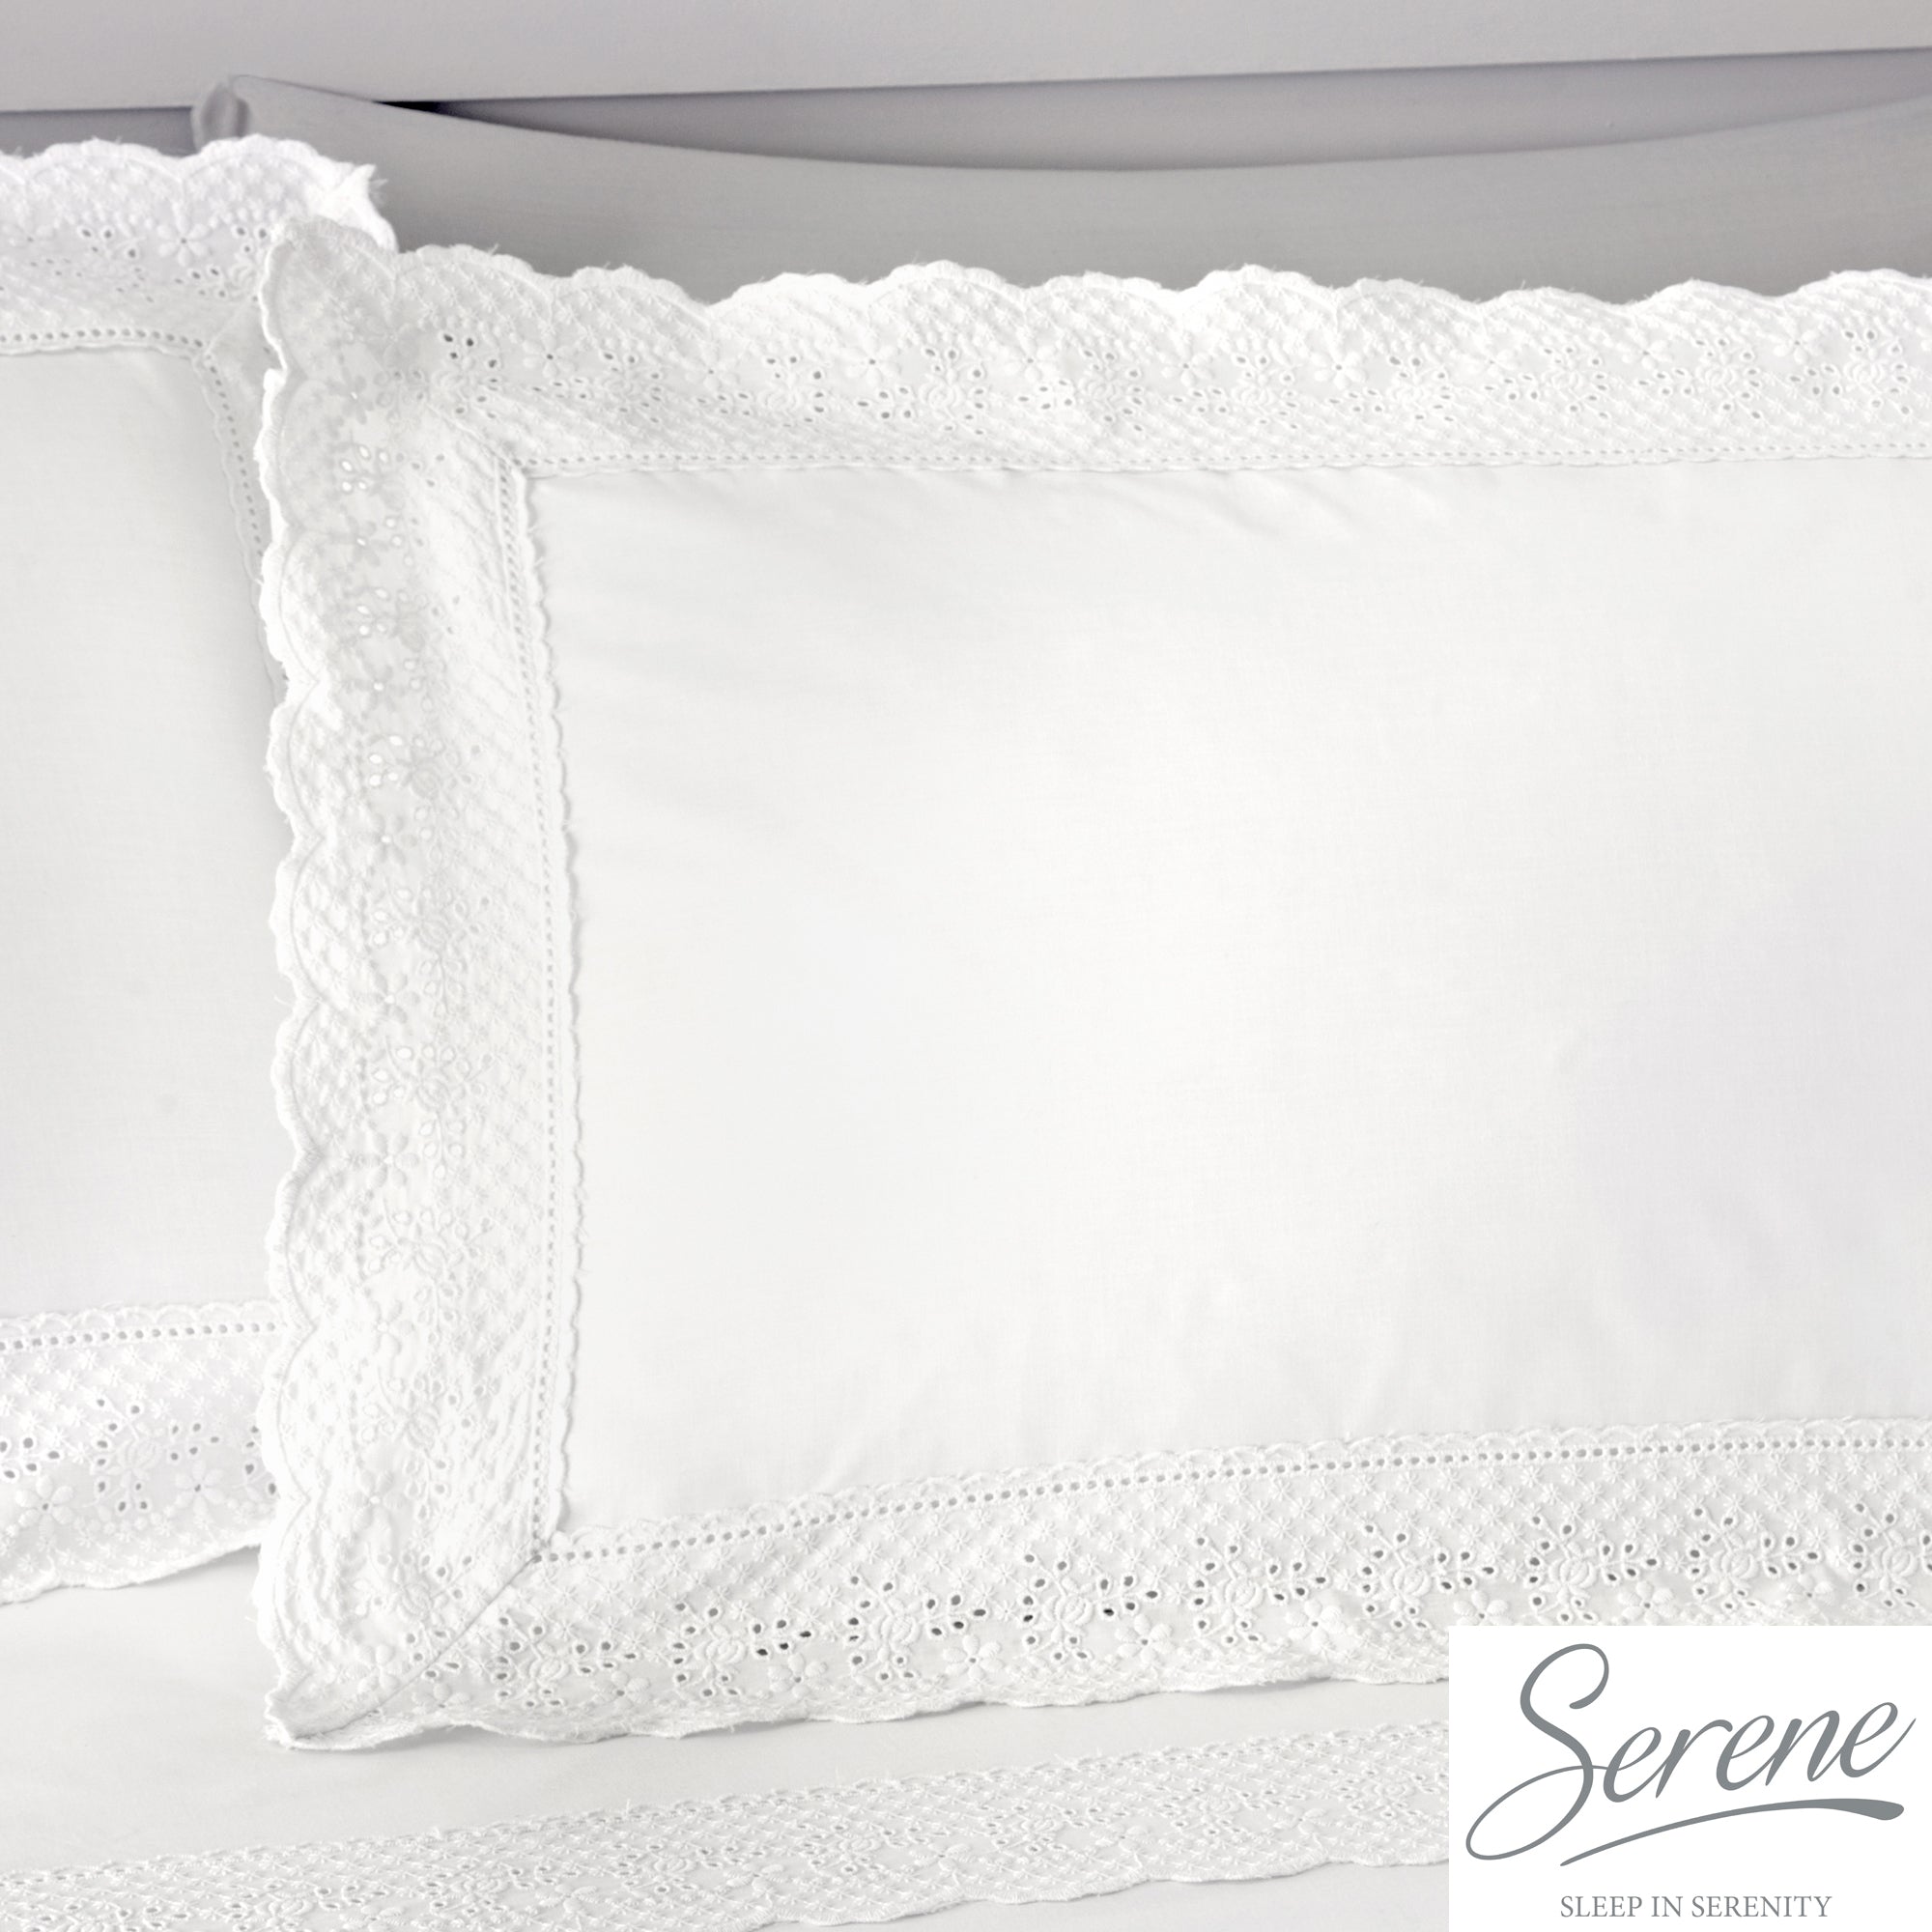 Renaissance - Easy Care Duvet Cover Set in White - by Serene